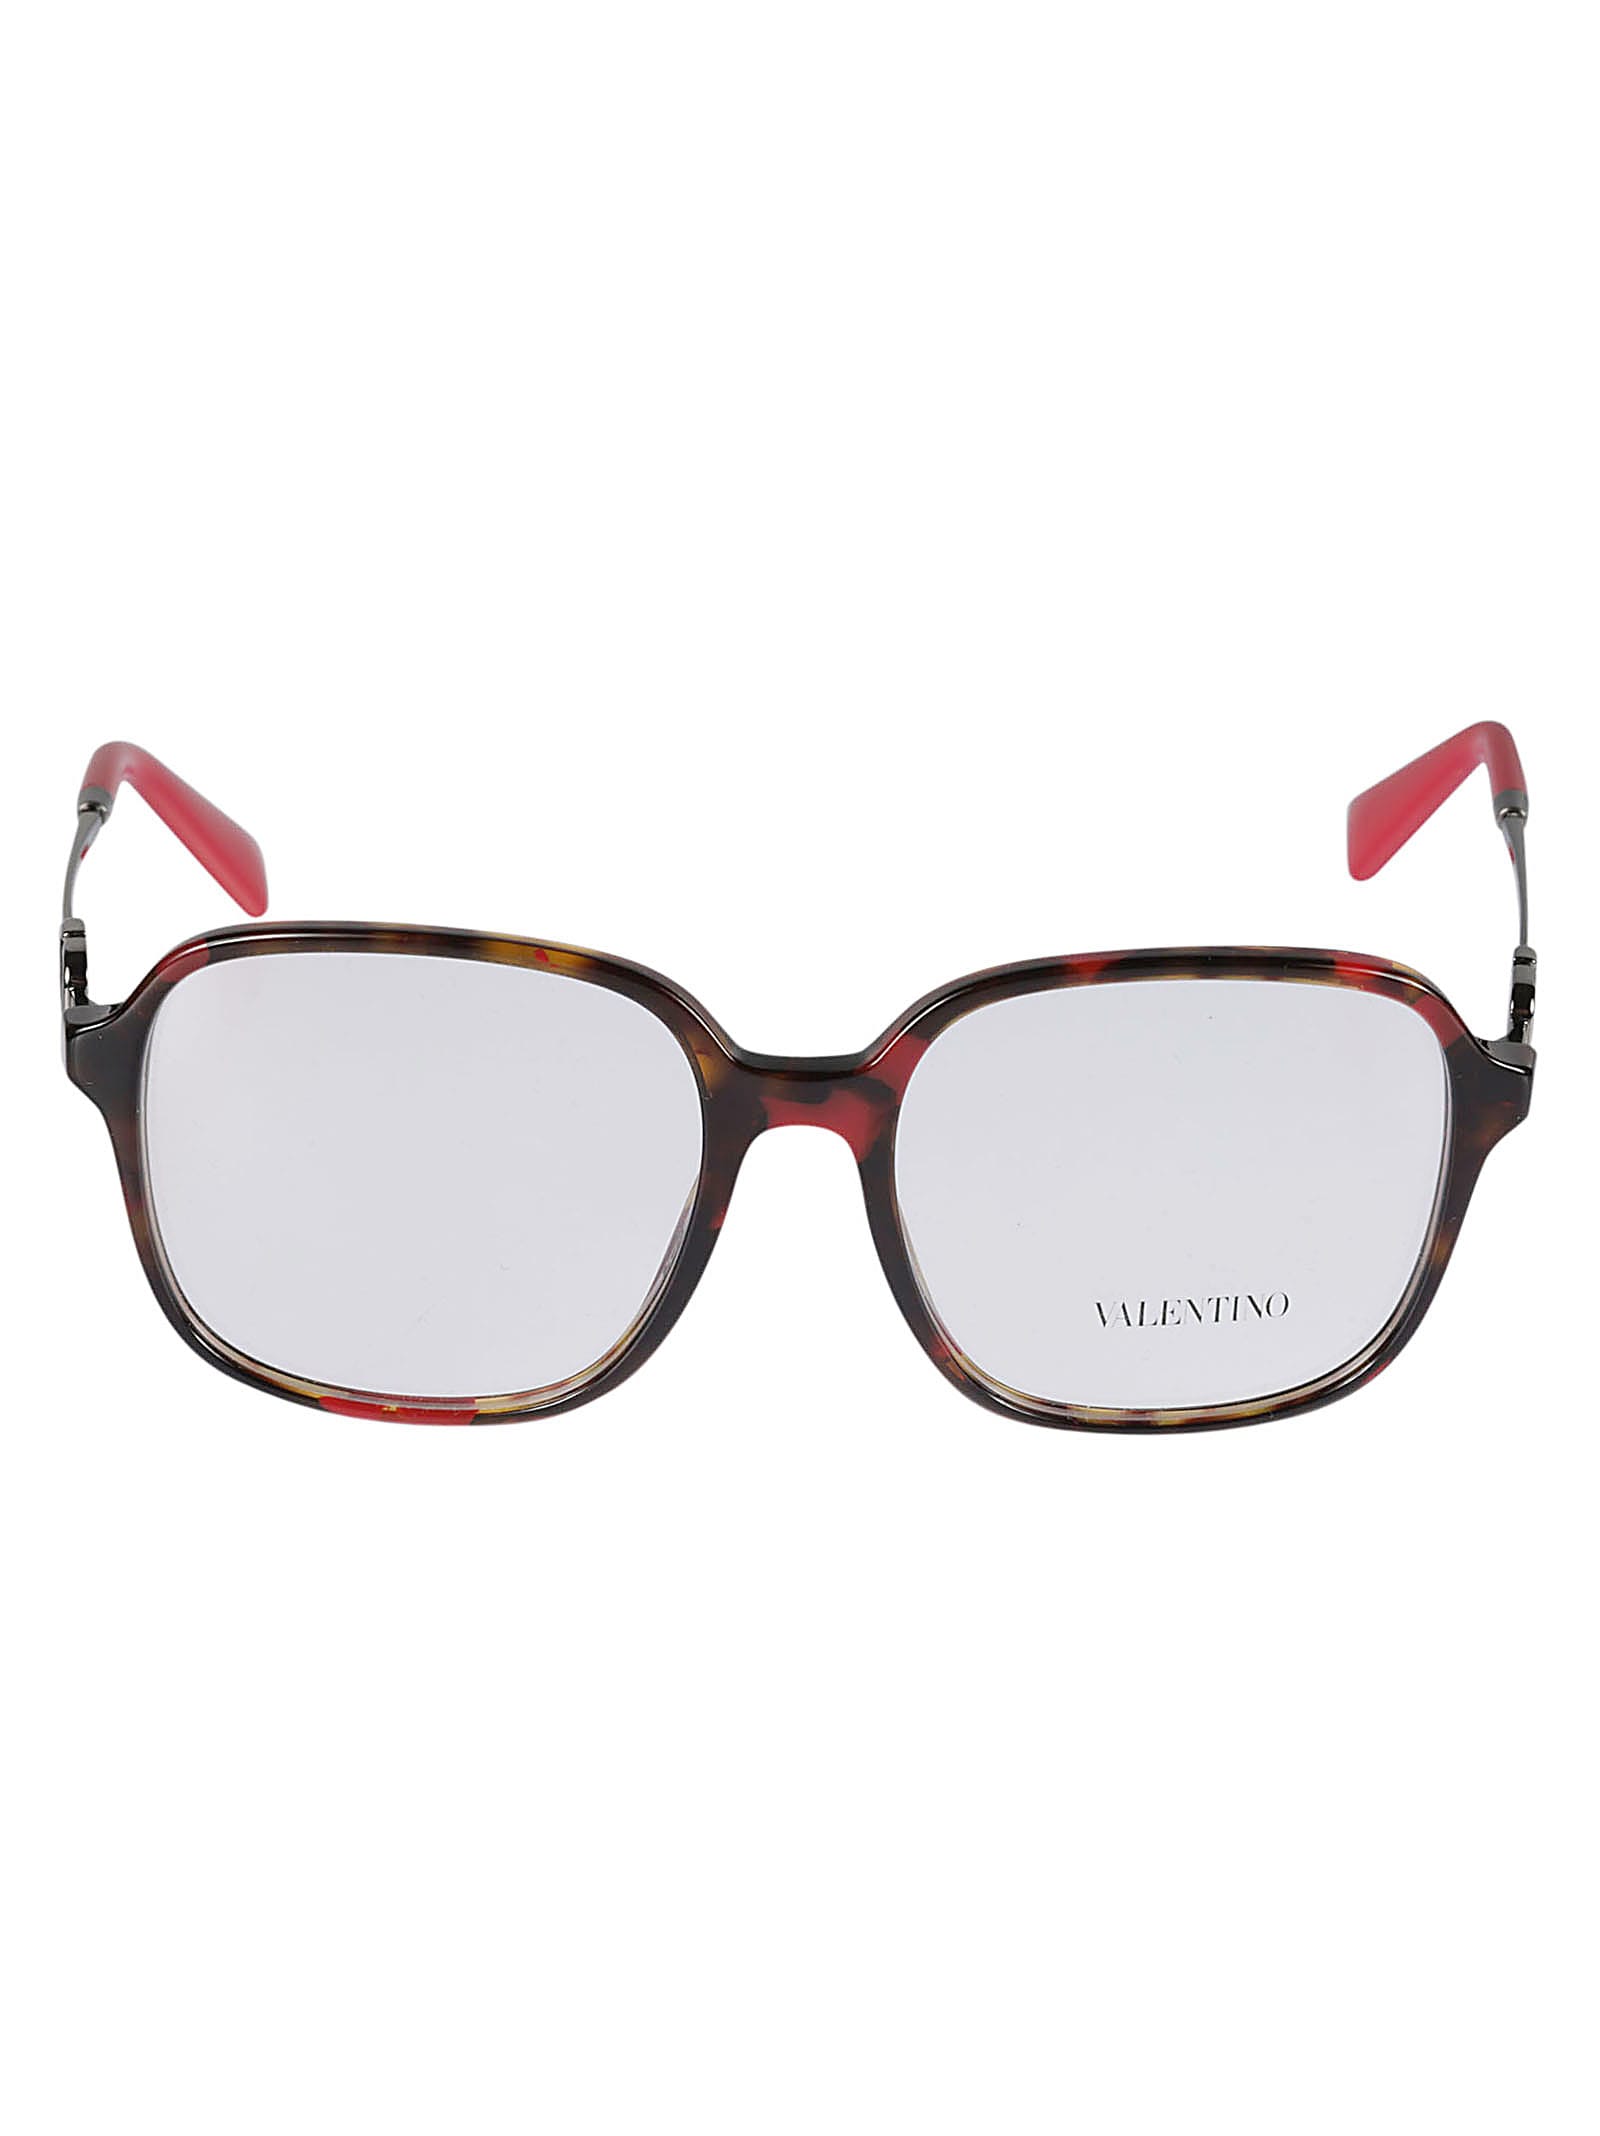 Valentino Vista5189 Glasses